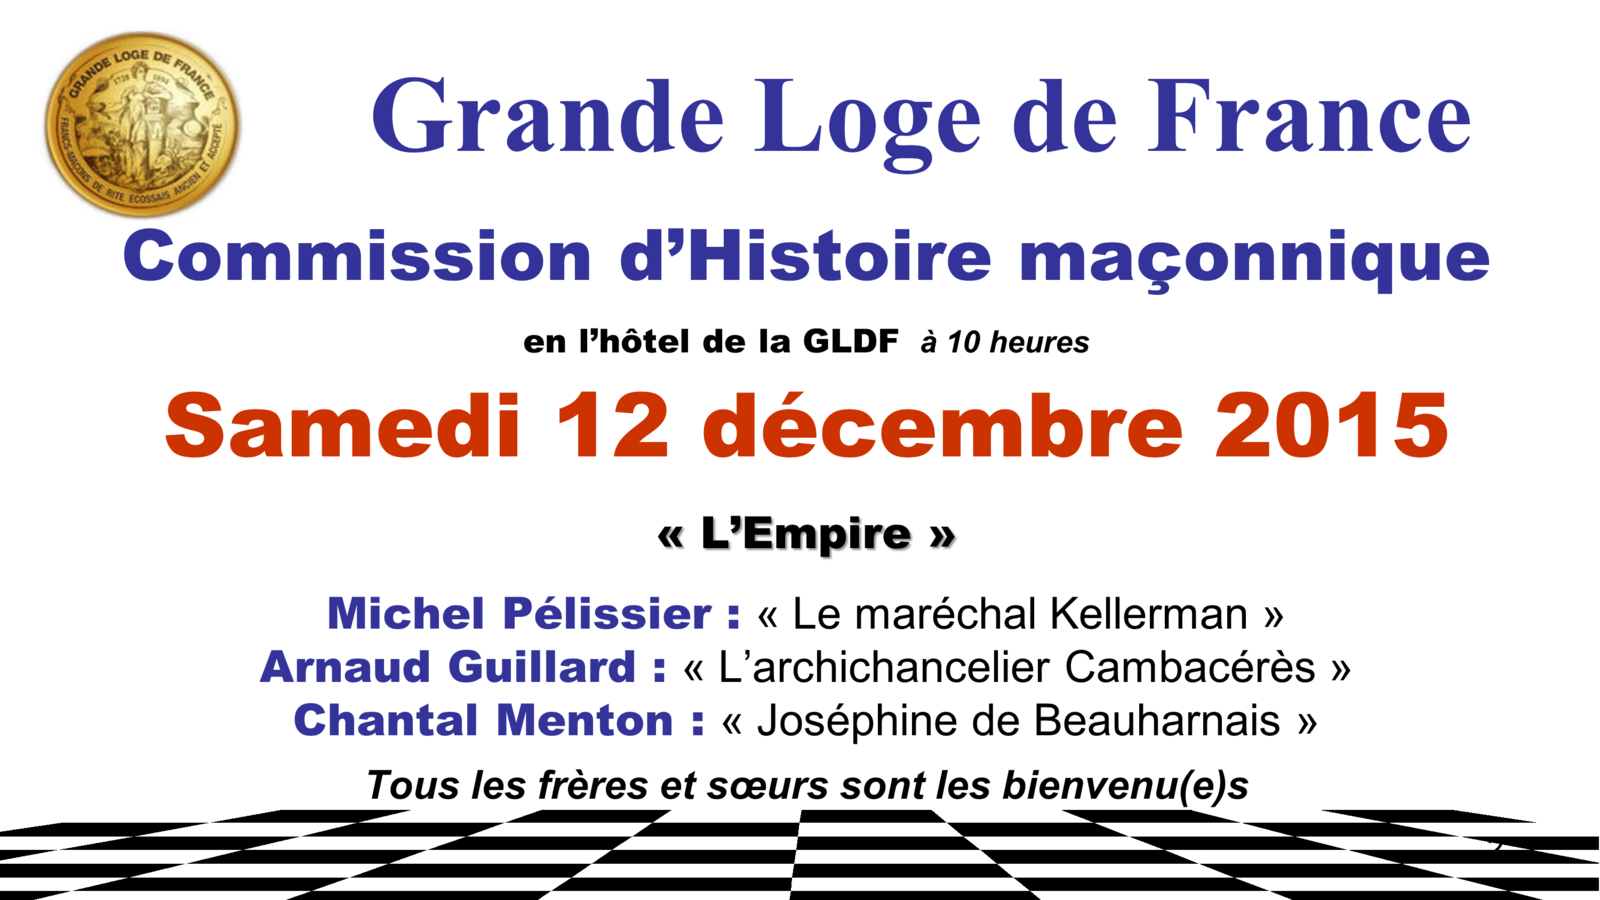 L'Empire. Commission Histoire de la GLDF le 12 décembre 2015 à 10 h à Paris.